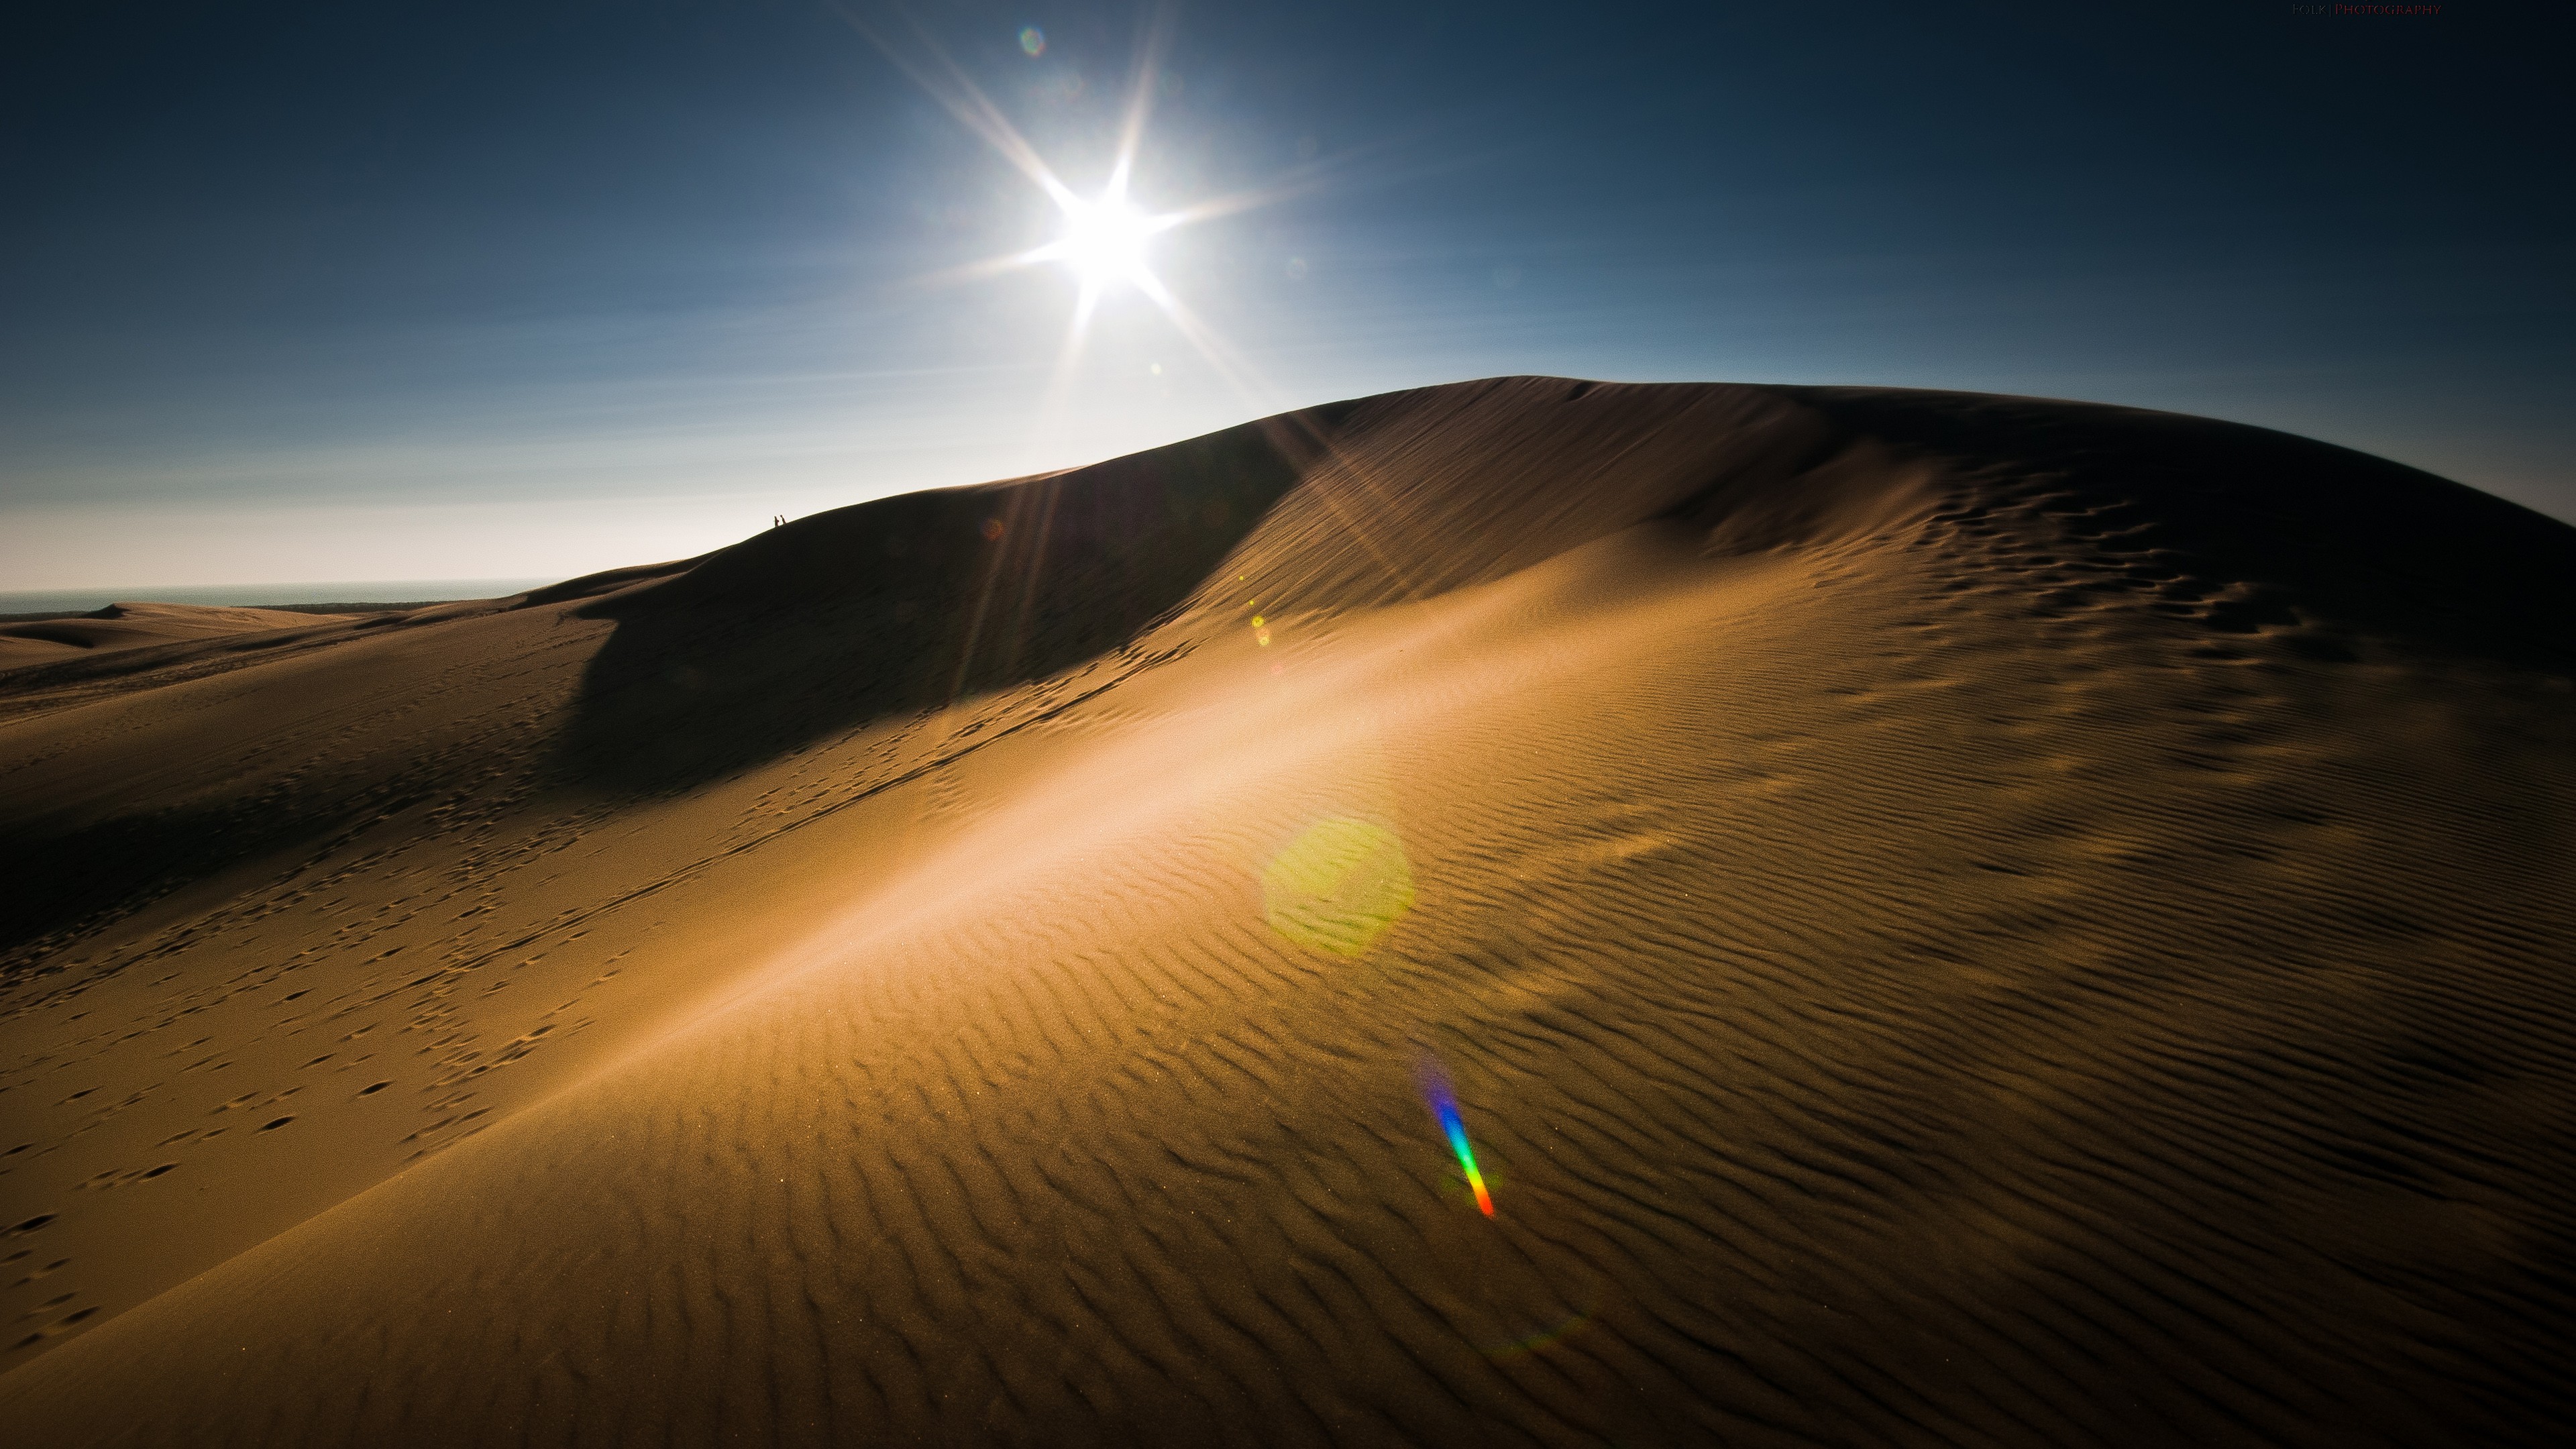 fondos de pantalla de uhd para android,arena,desierto,cielo,duna,ligero